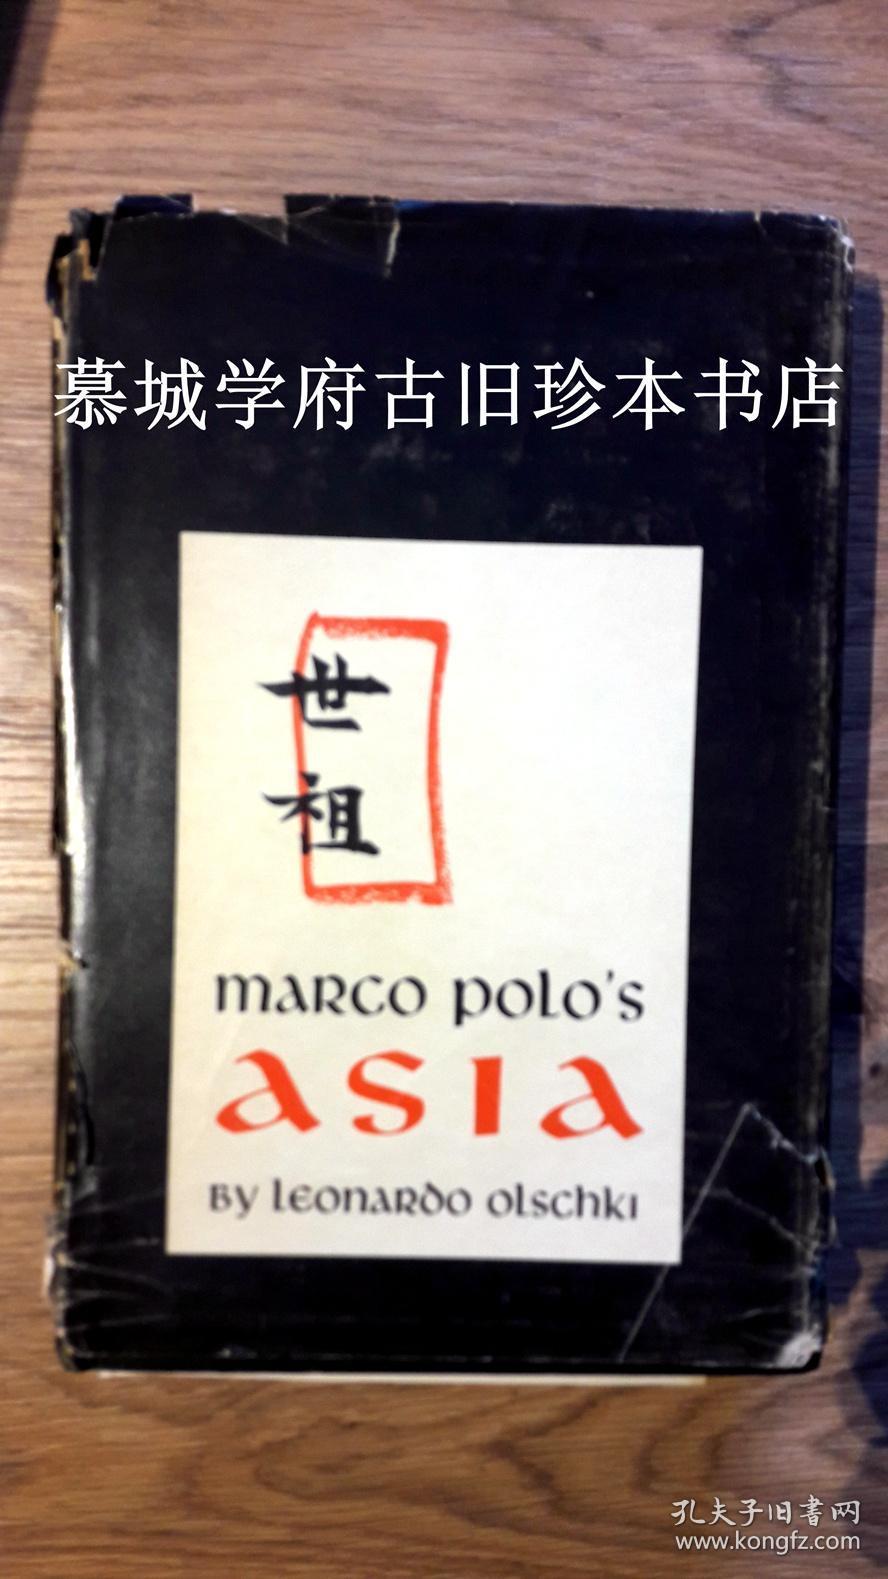 LEONARDO OLSCHKI: MARCO POLO'S ASIA. AN INTRODUCTION TO HIS "DESCRIPTION OF THE WORLD" CALLES "IL MILIONE"